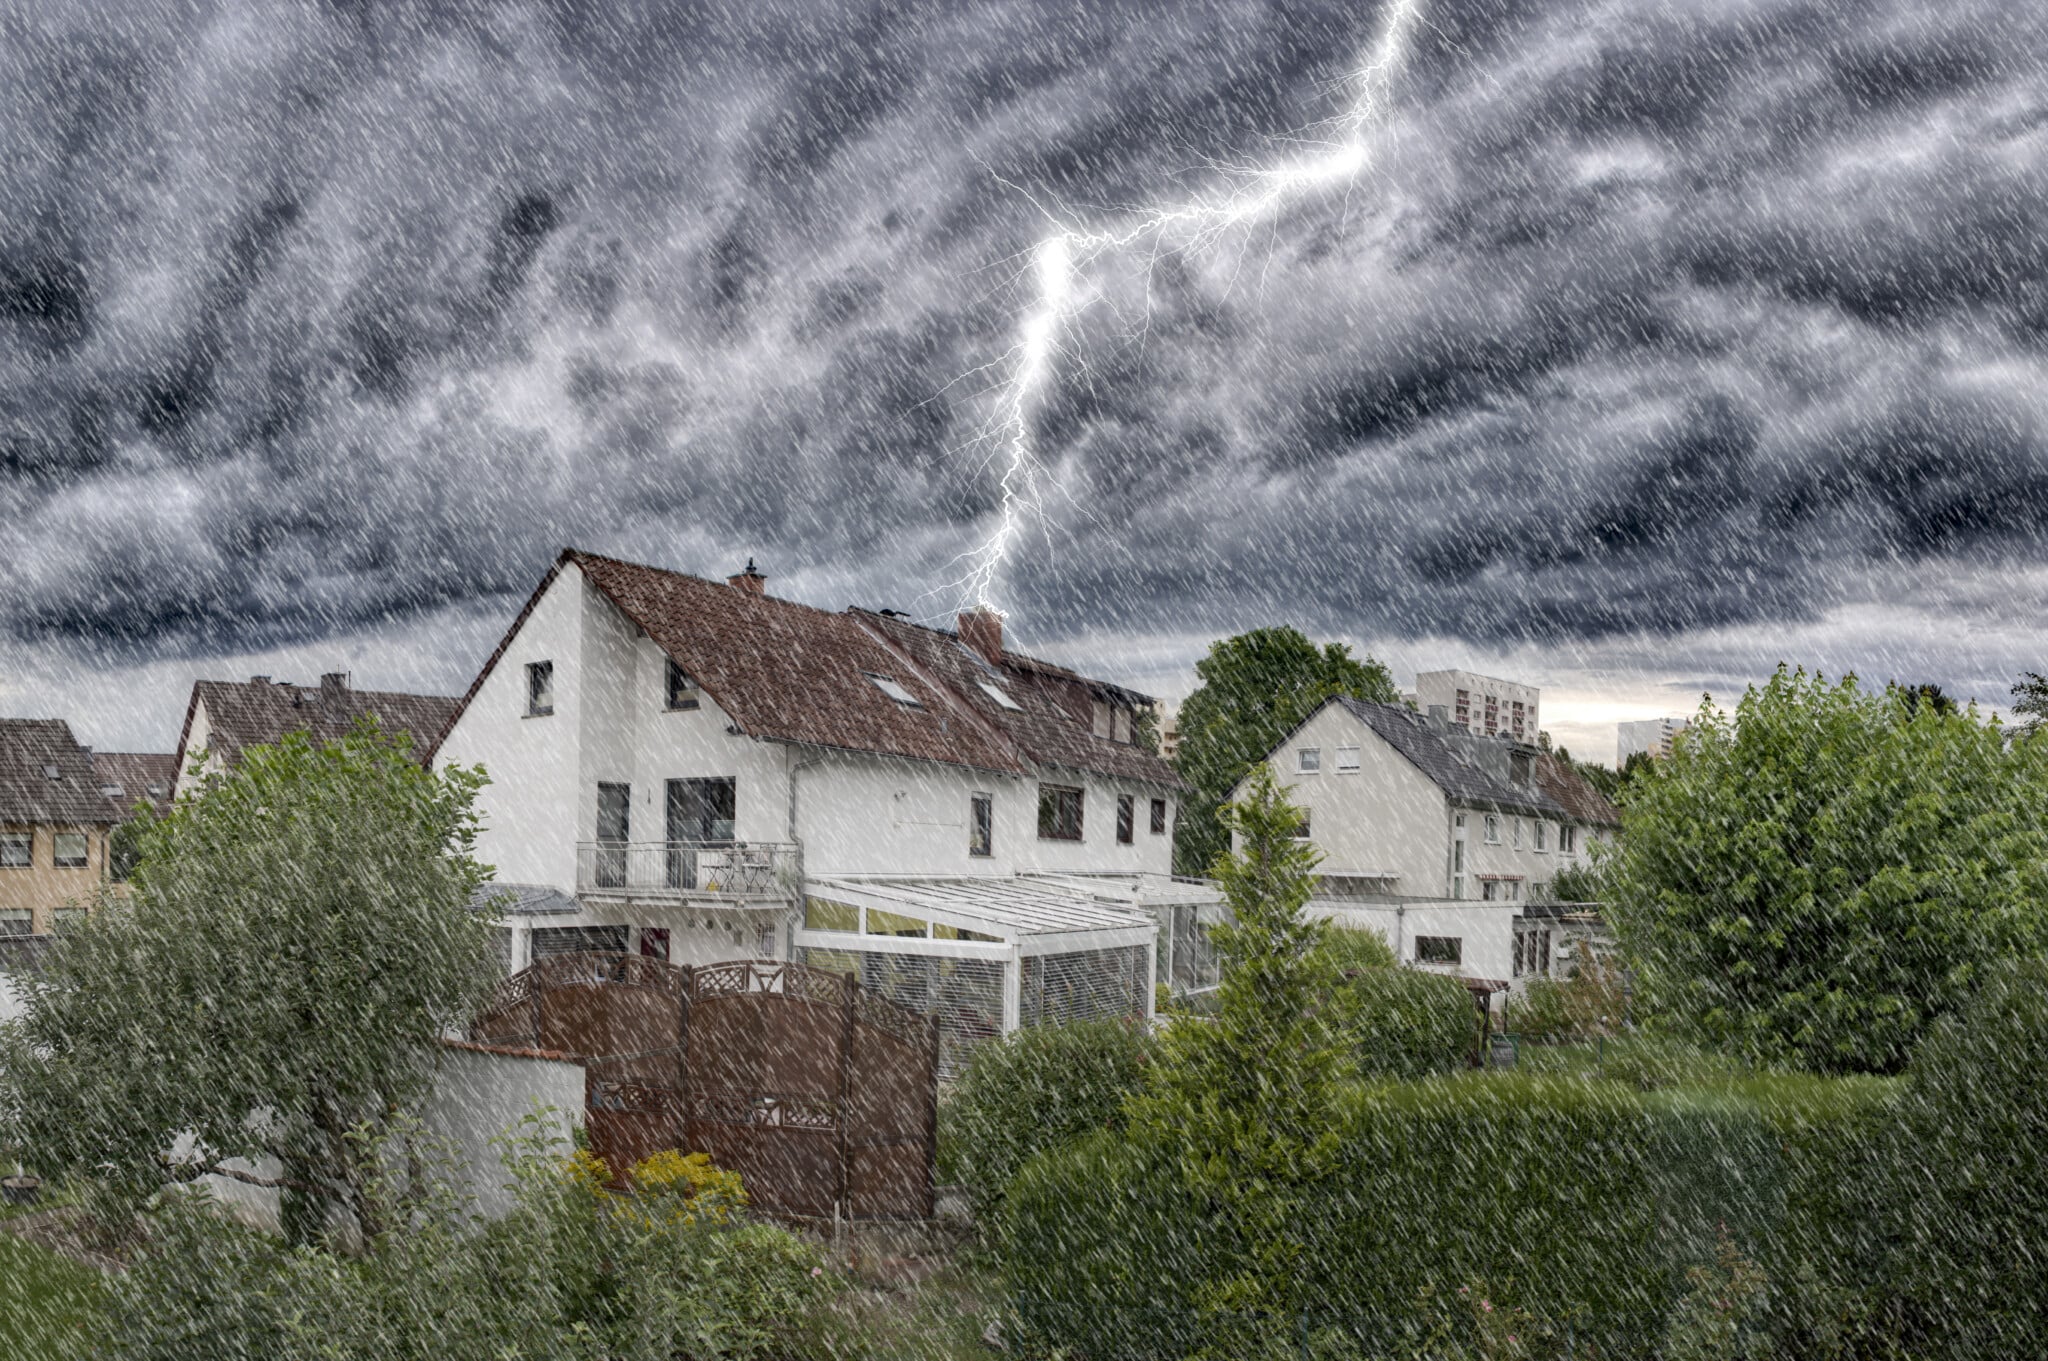 Ein Blitz schlägt in ein Haus ein.